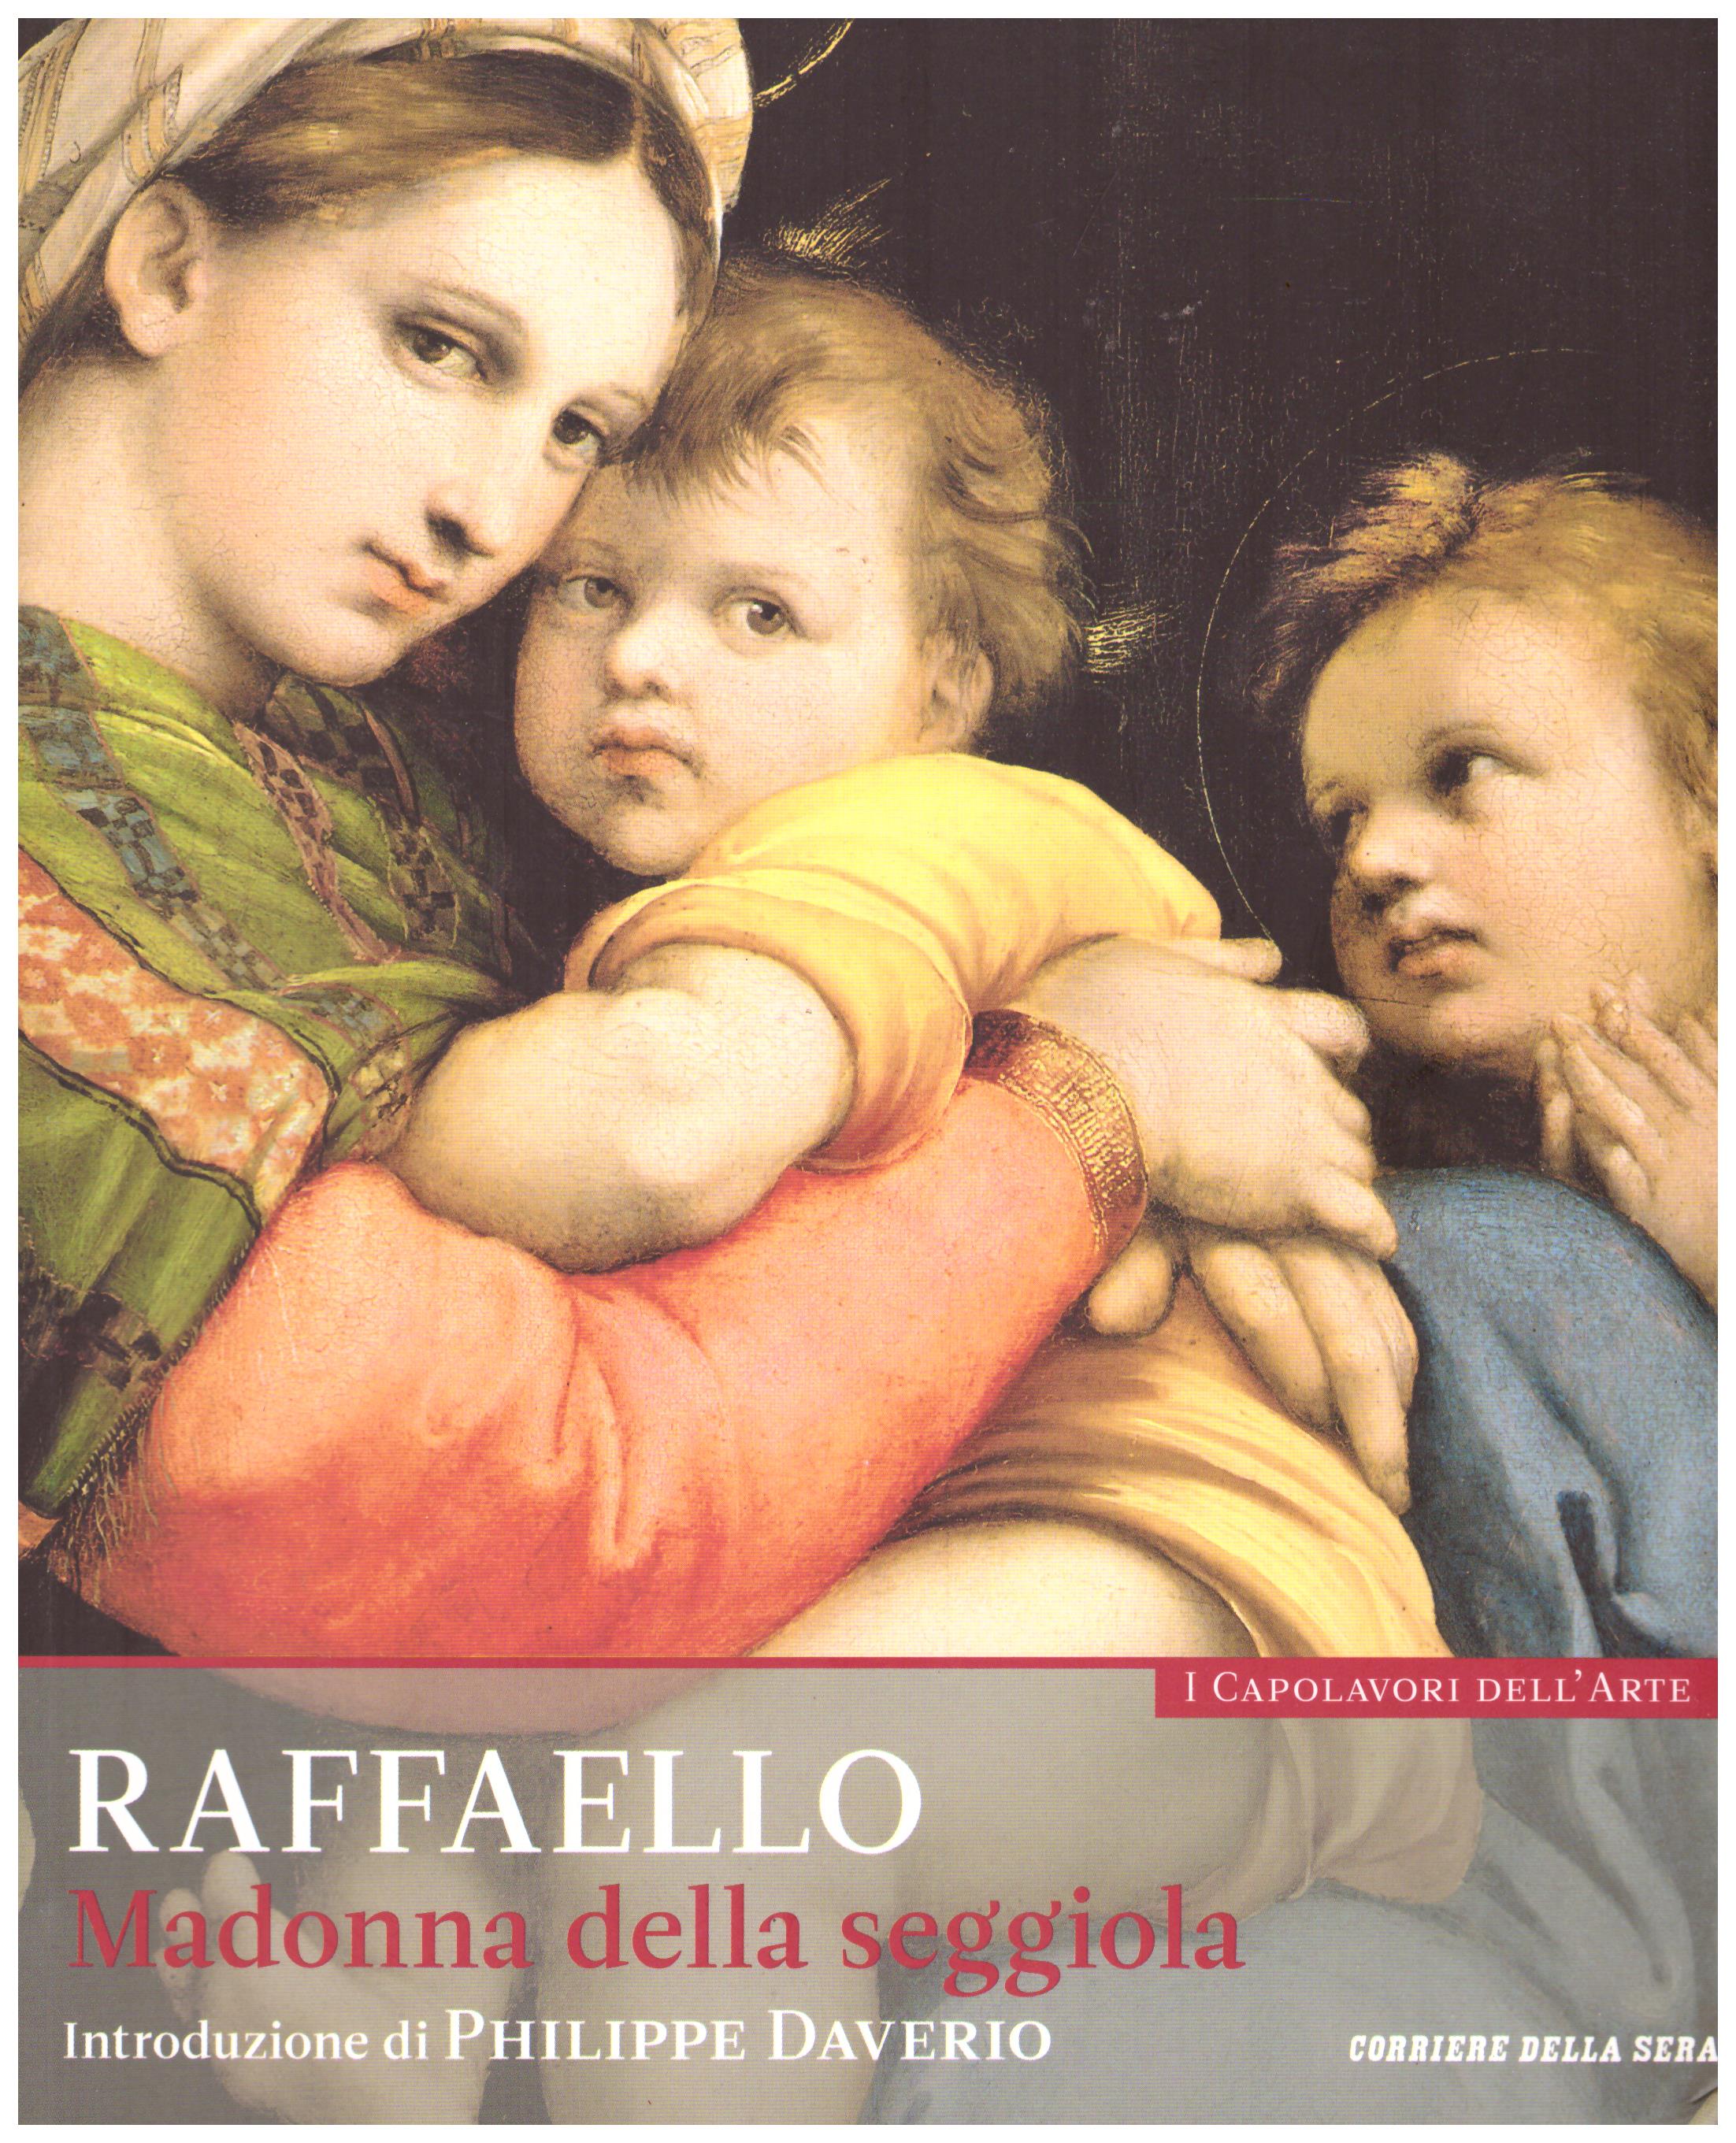 Titolo: I capolavori dell'arte,Raffaello n.15  Autore : AA.VV.   Editore: education,it/corriere della sera, 2015